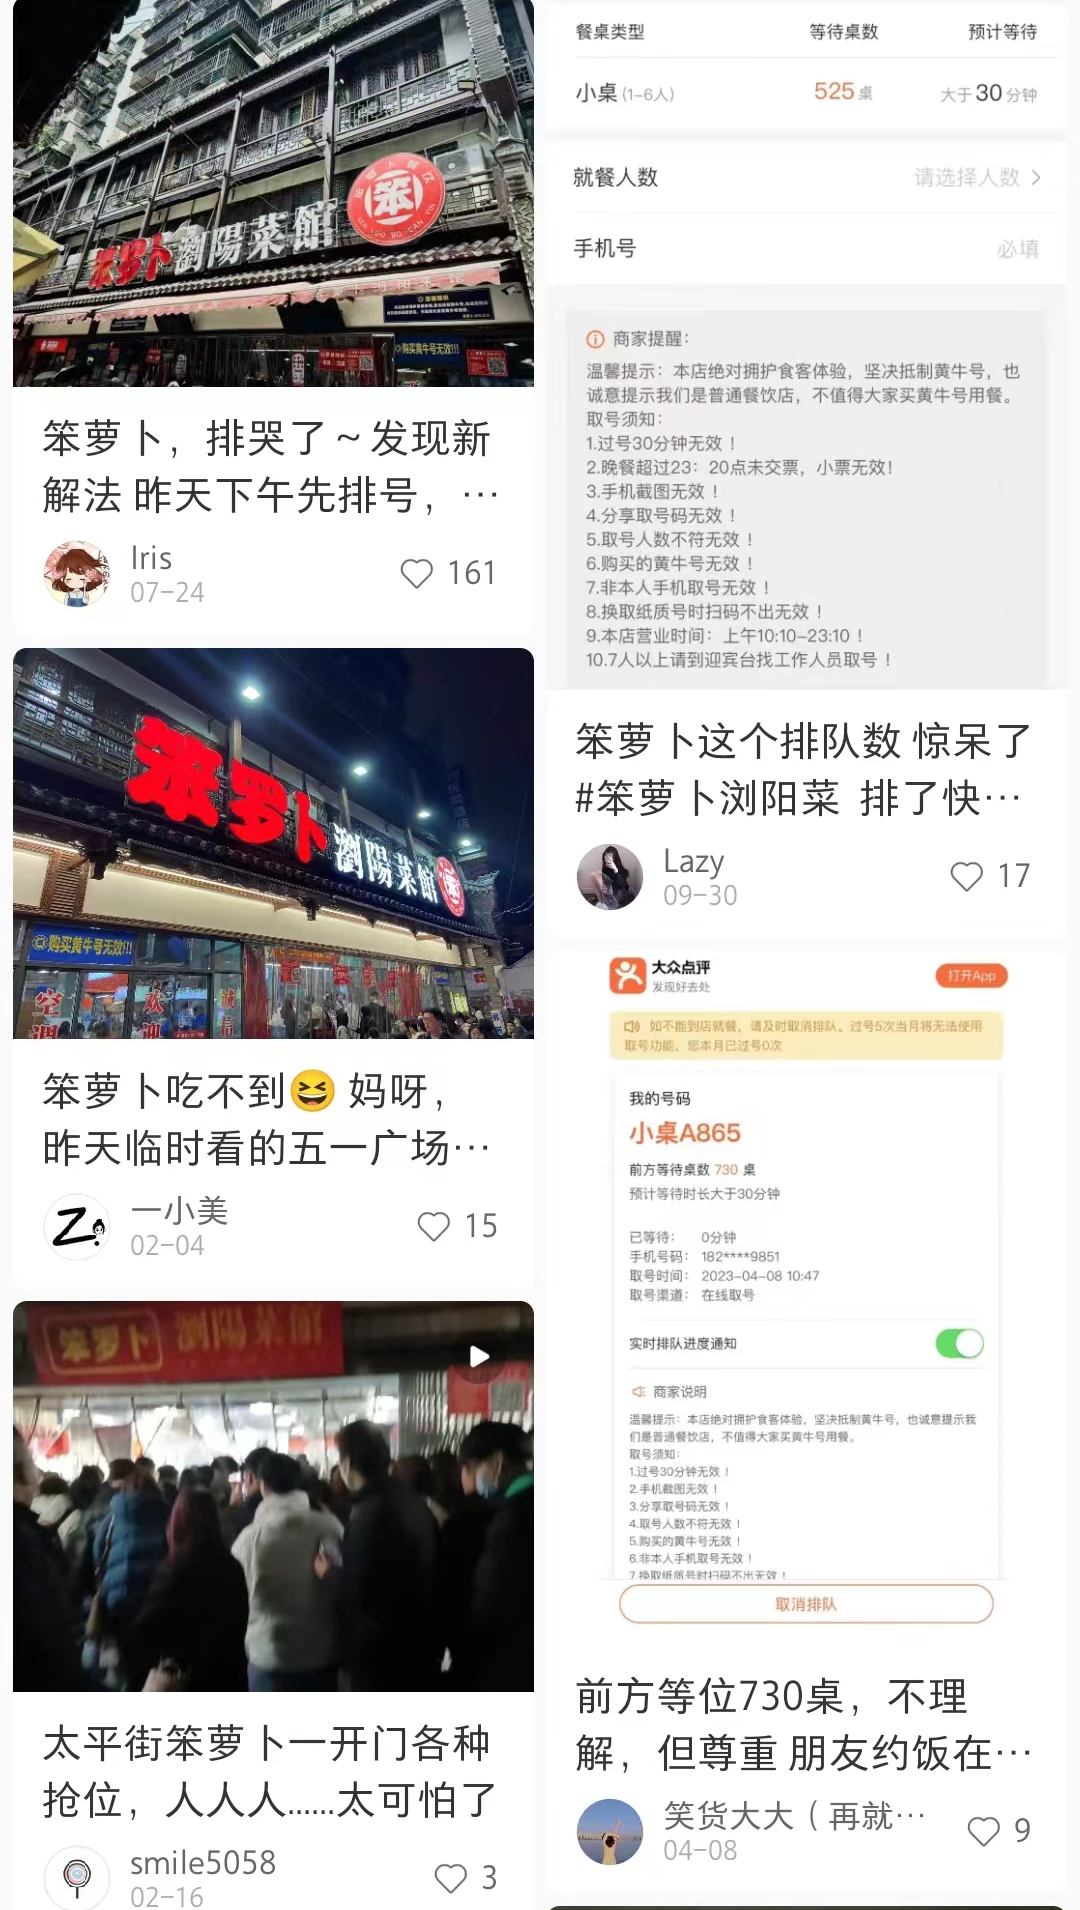 ZOOM曝出大BUG 可获得系统源访问权 官方紧急修复 - 【CNMO新闻】近日